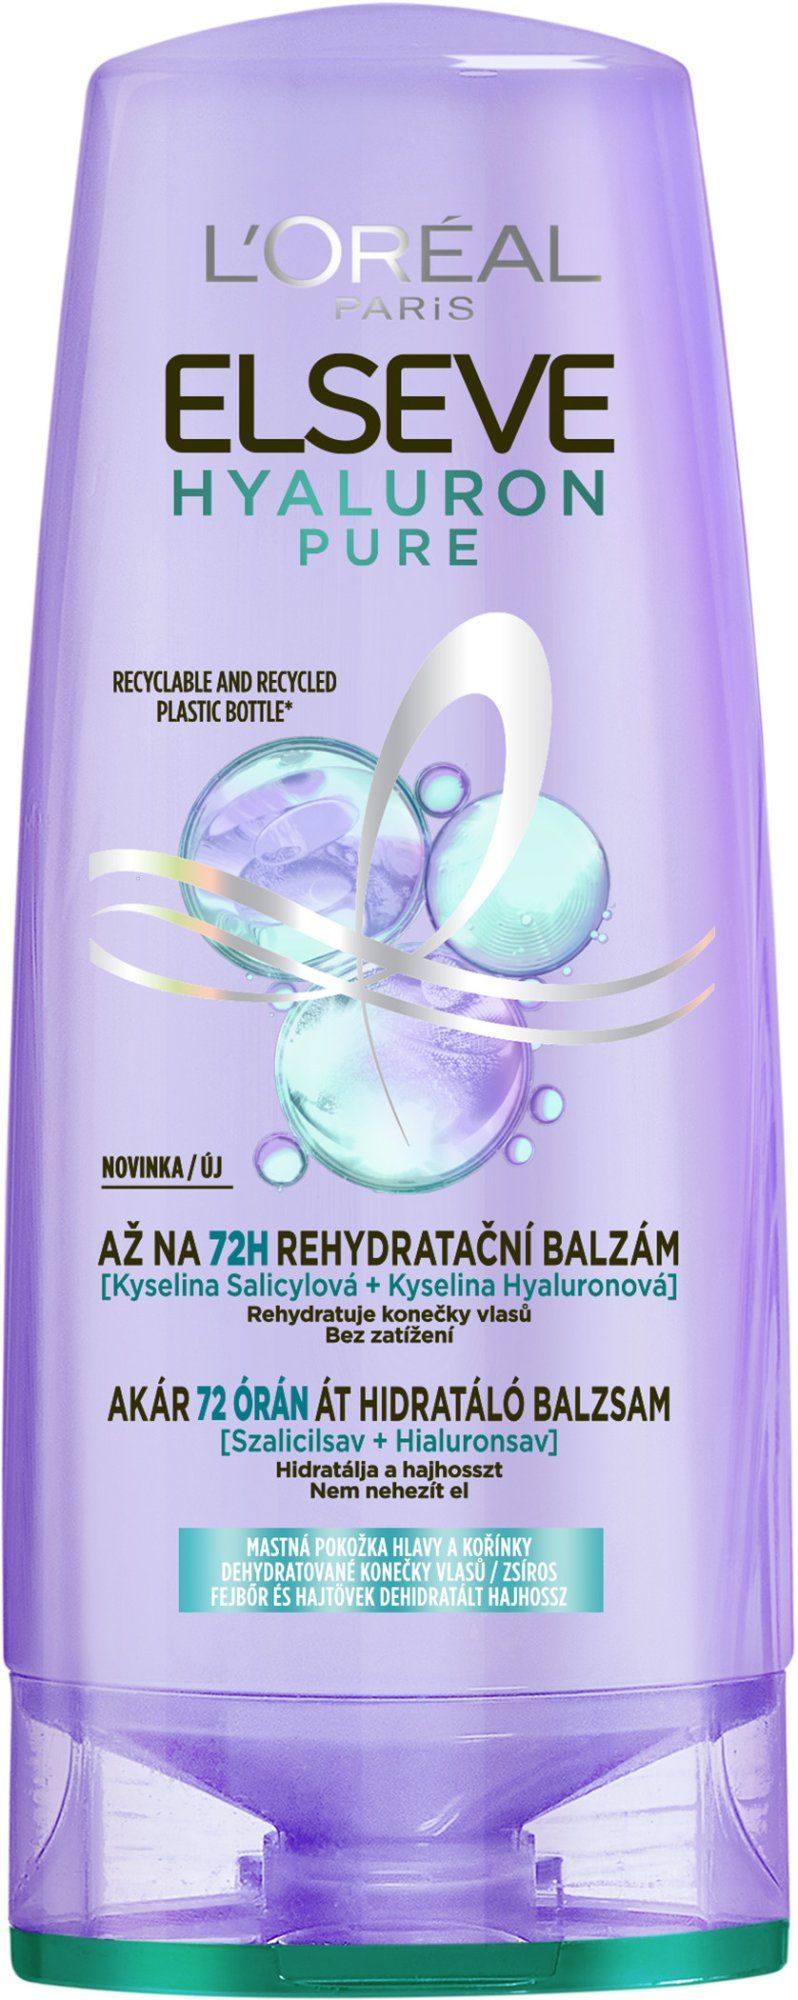 L'Oréal Paris Elseve Elseve Hyaluron Pure balzám, 200 ml